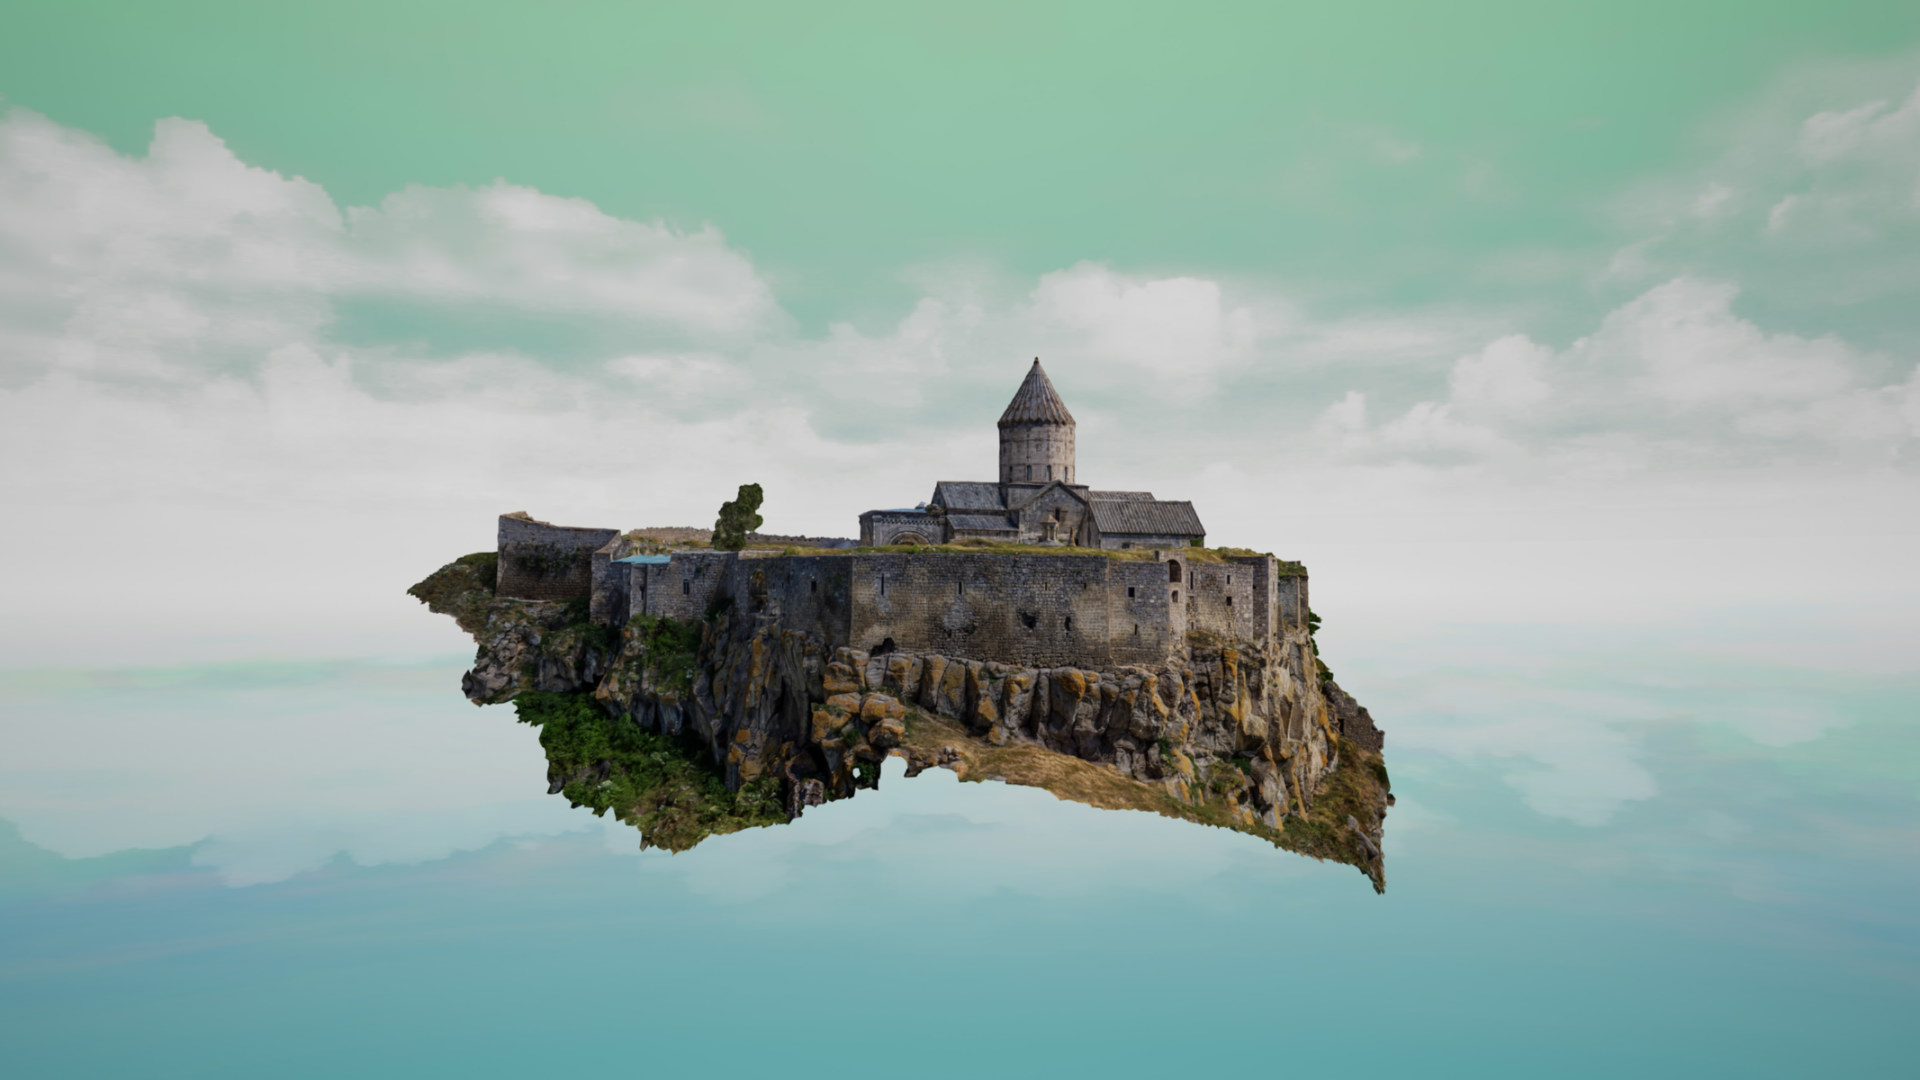 Bản thử nghiệm mới của Sidequest cho phép biến các mô hình 3D thành các mảnh trong trò chơi ghép hình